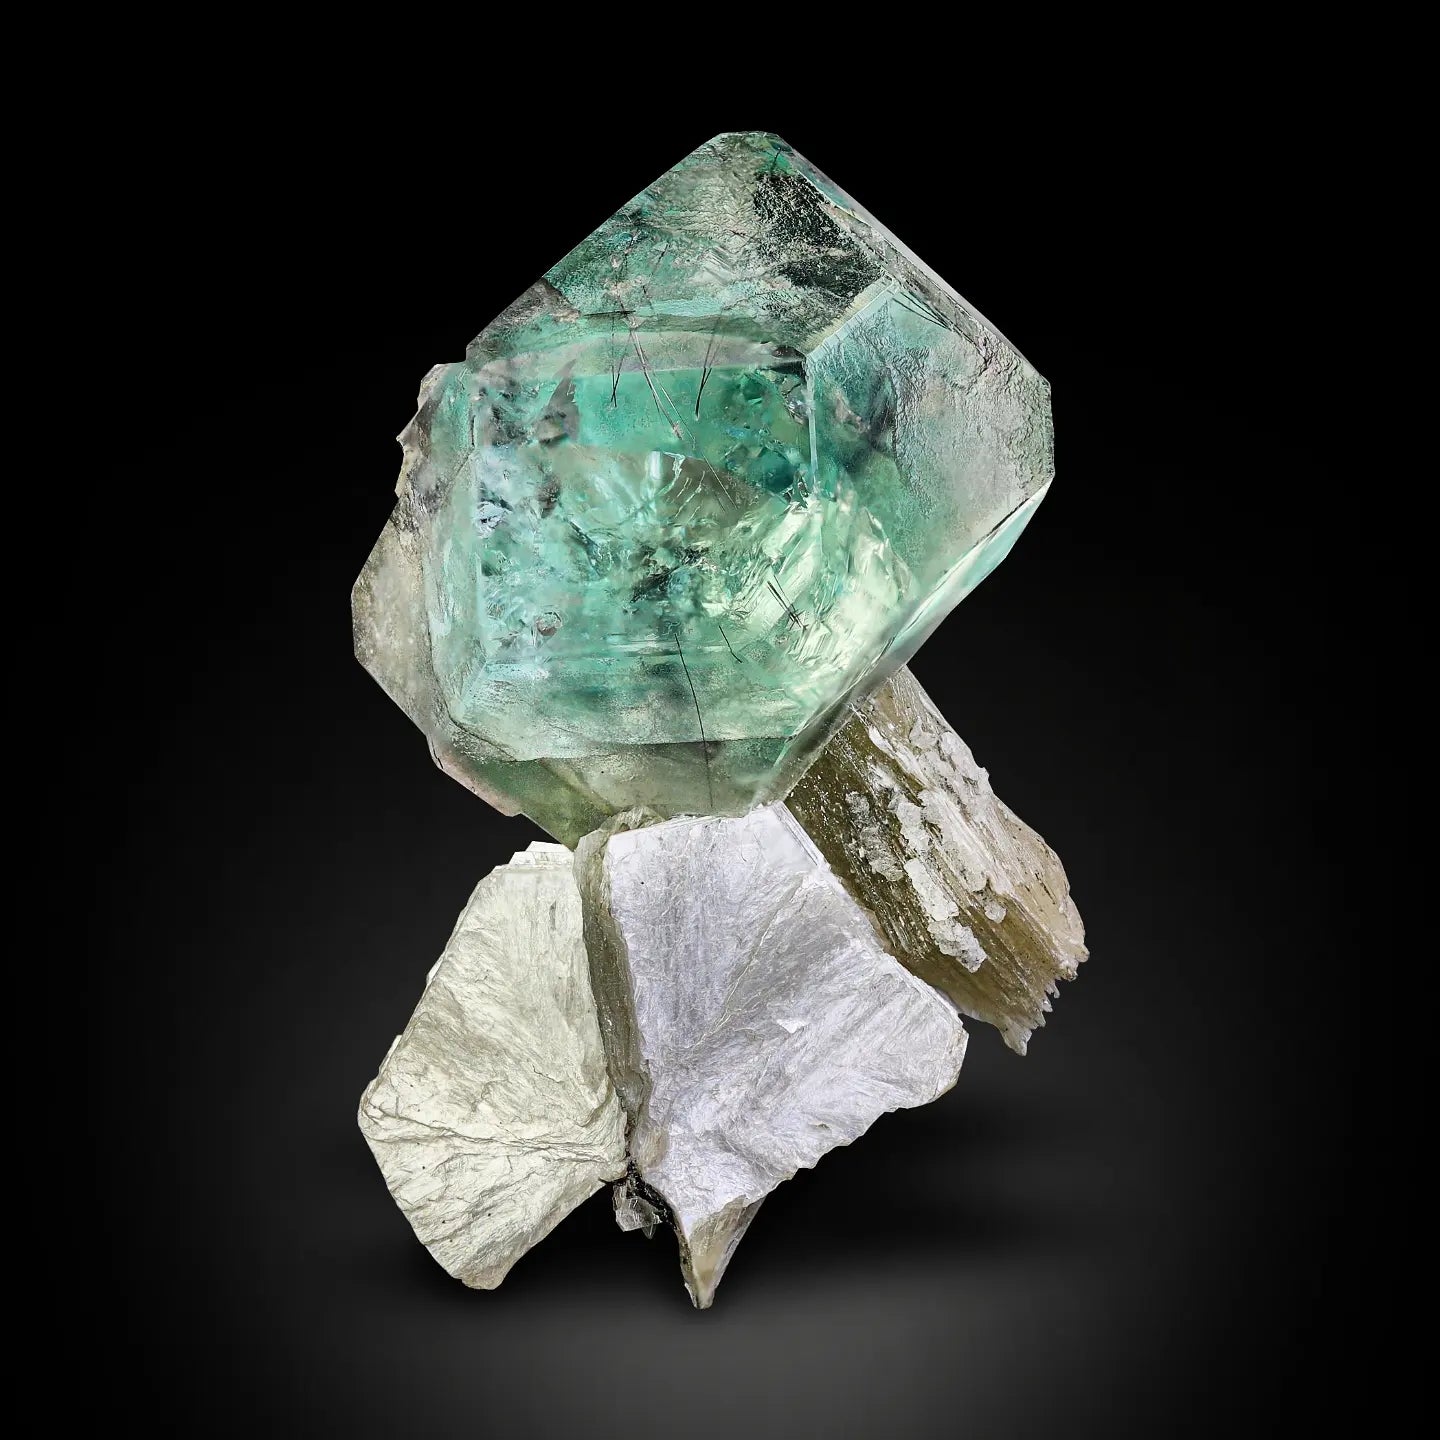 Glamorous Green Fluorite Crystals on Muscovite matrix from Skardu, Pakistan